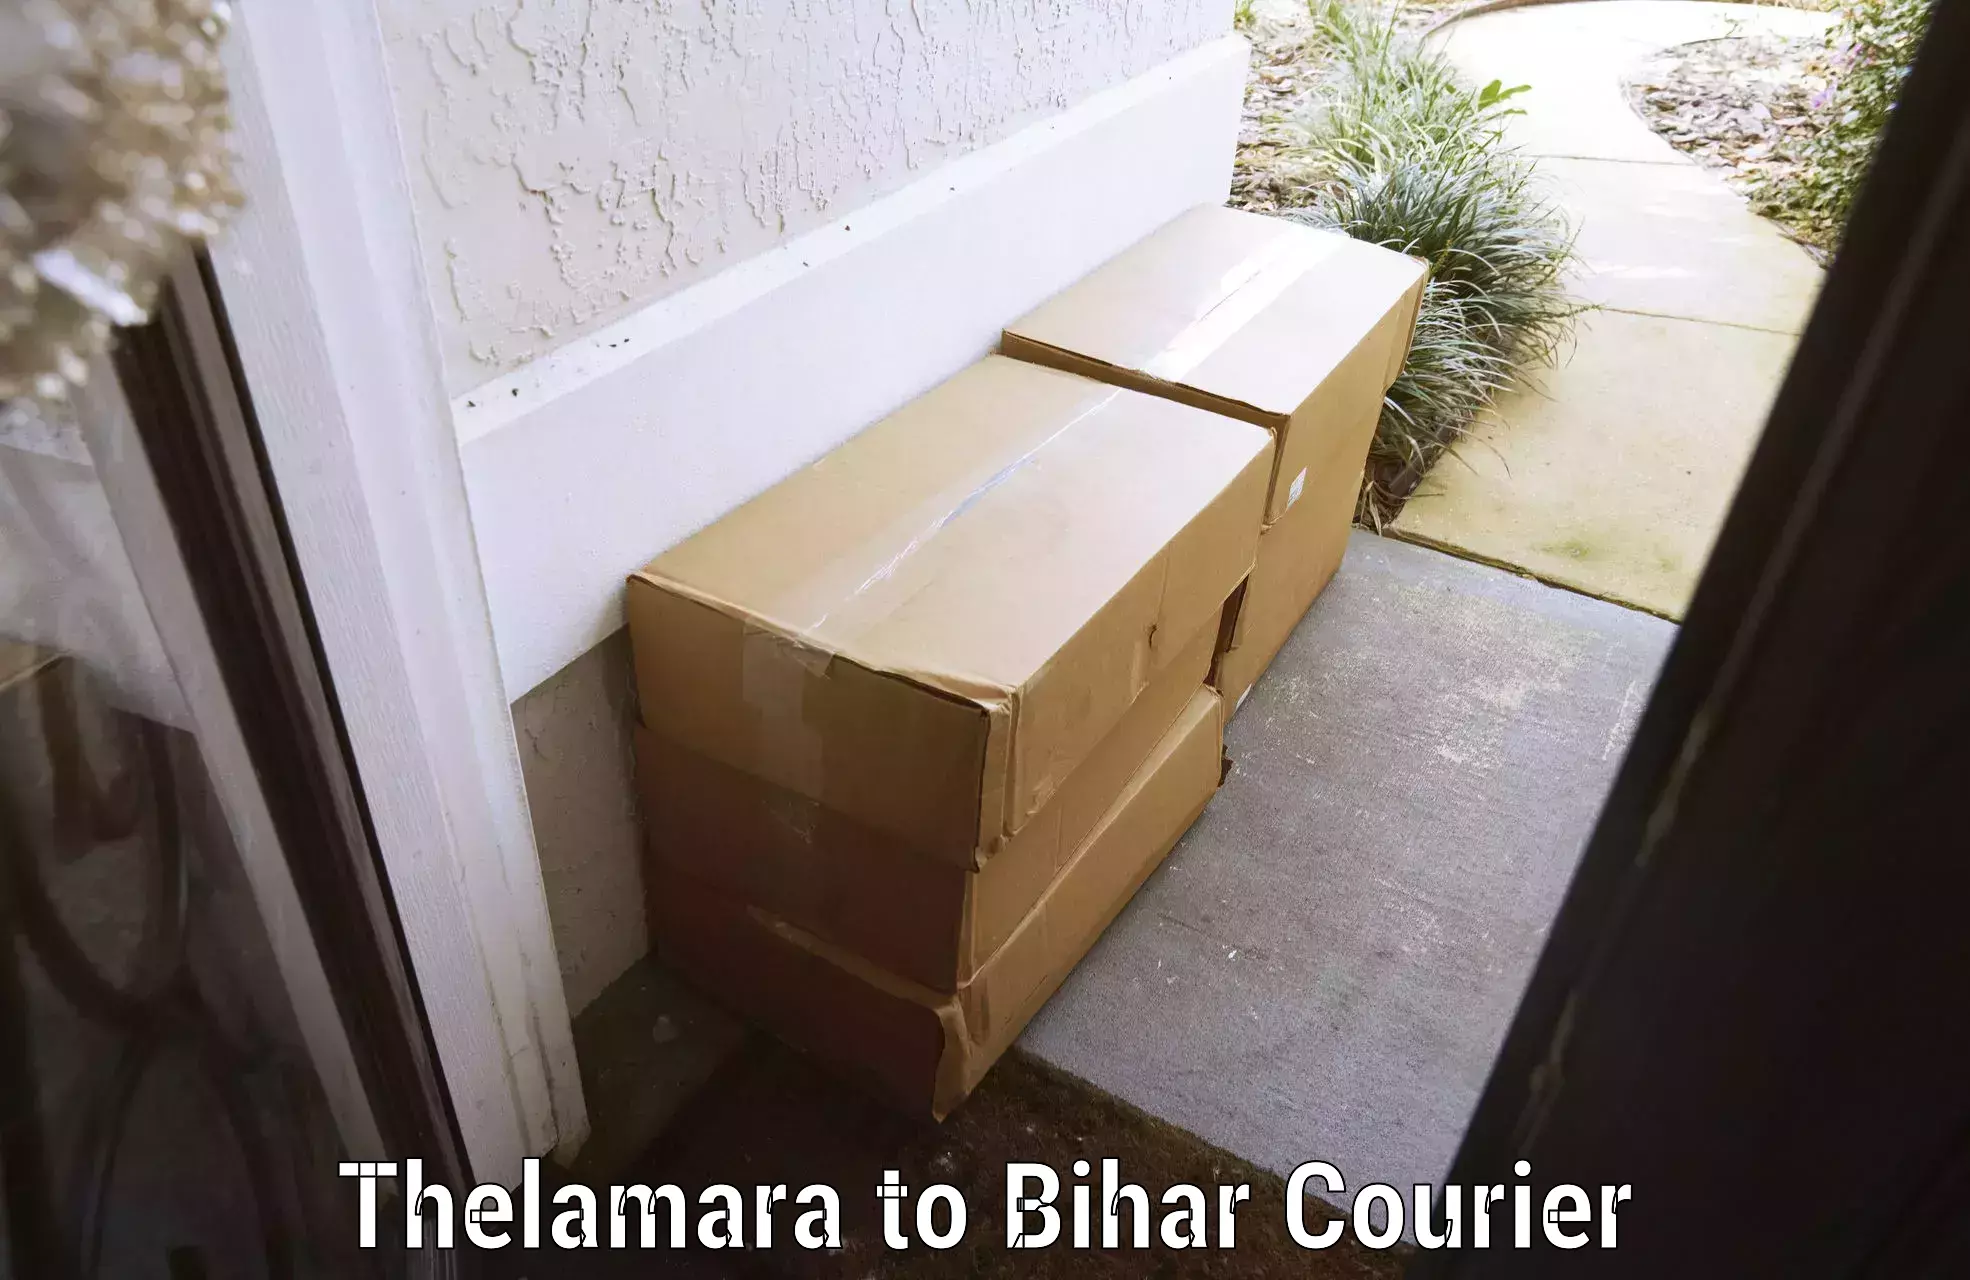 Baggage shipping service Thelamara to Jhajha